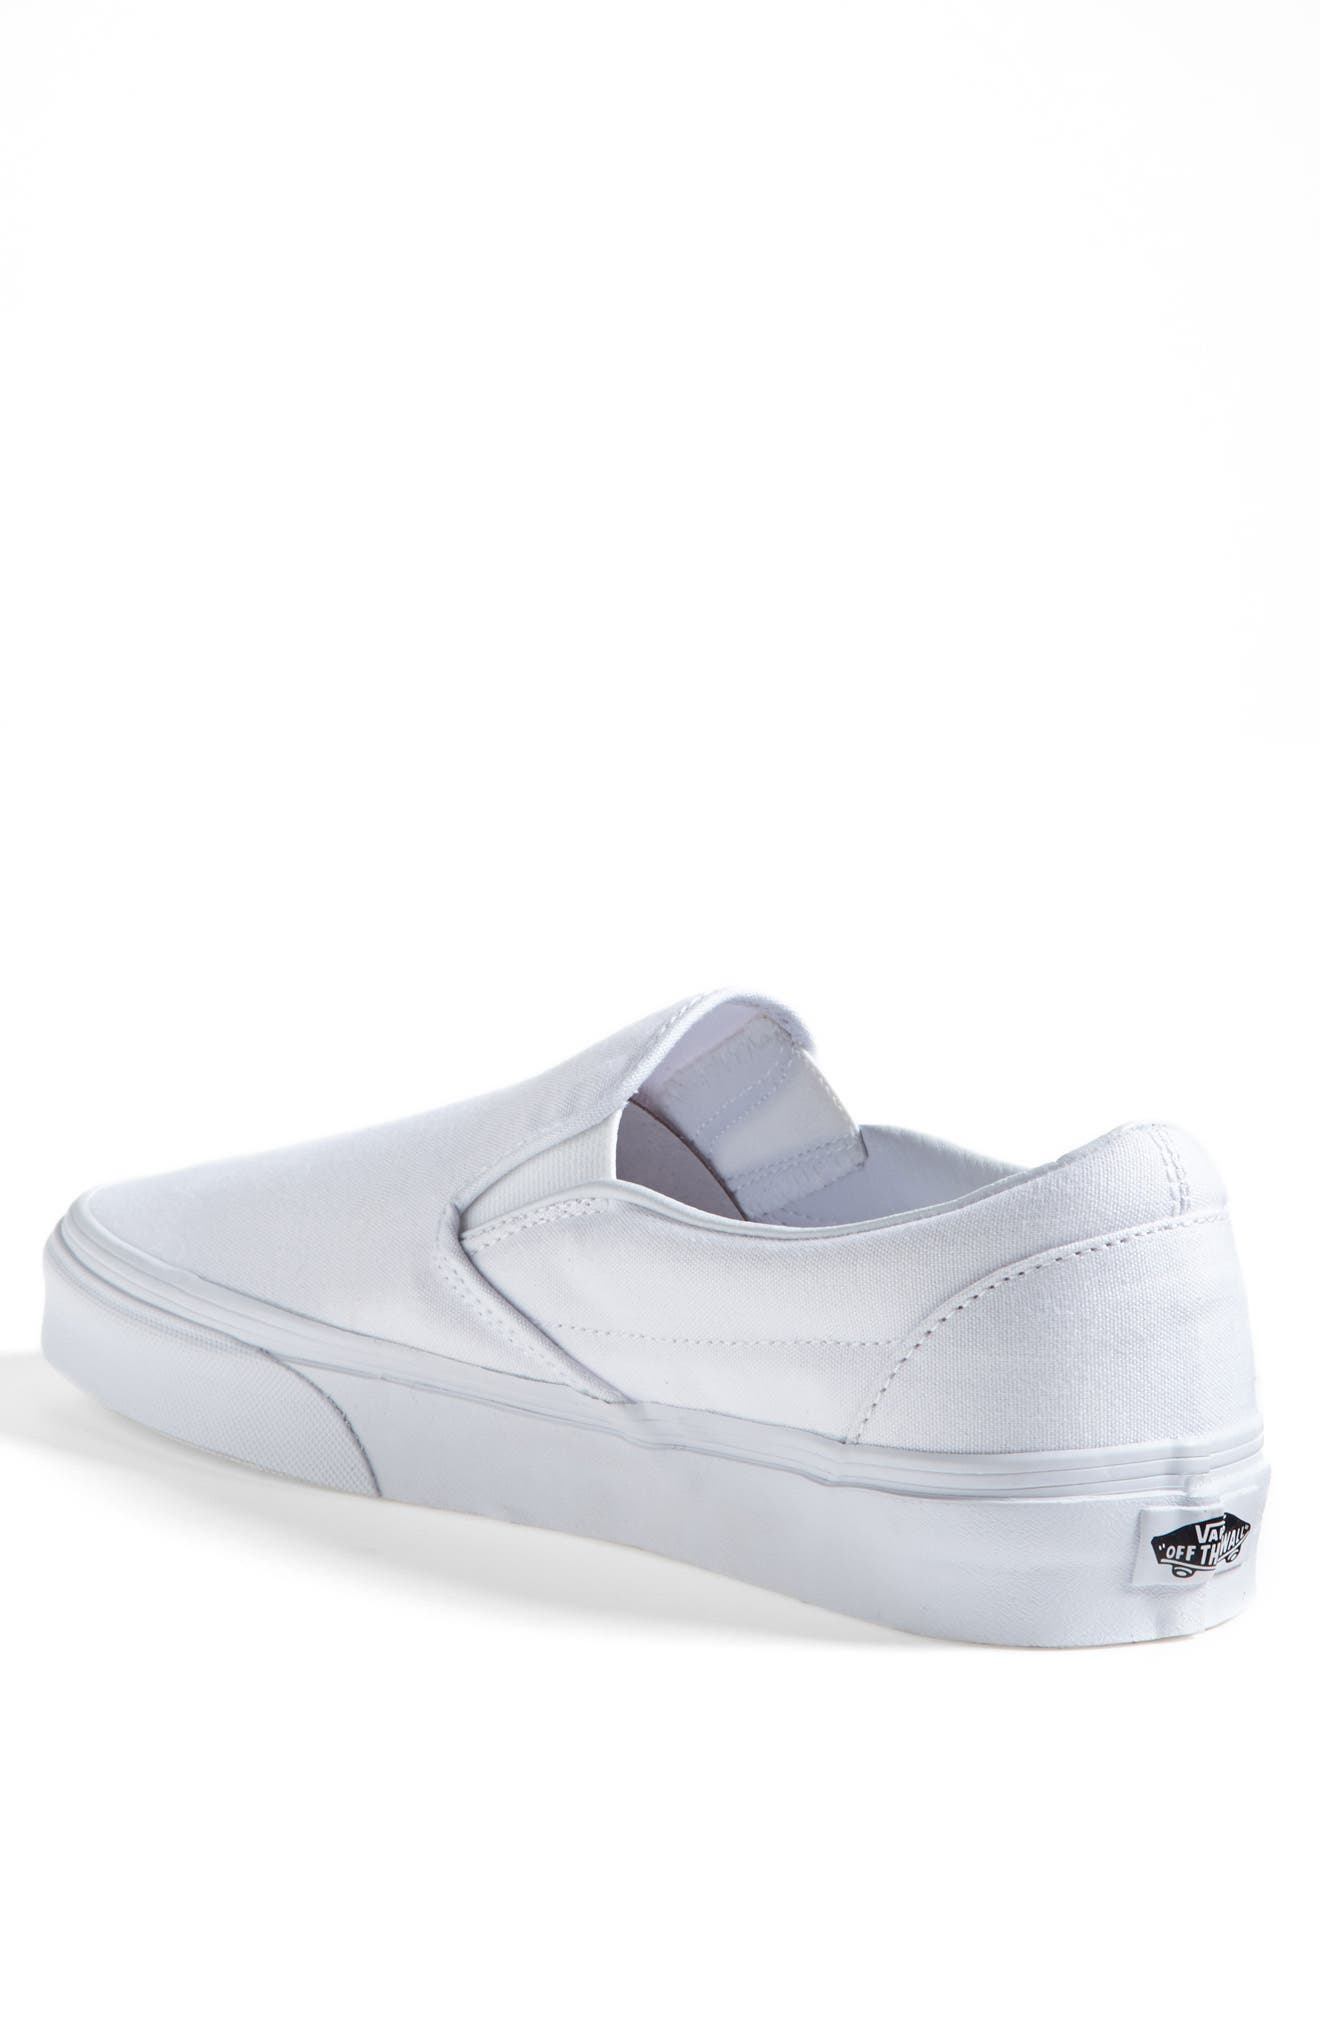 vans white slip on shoes womens